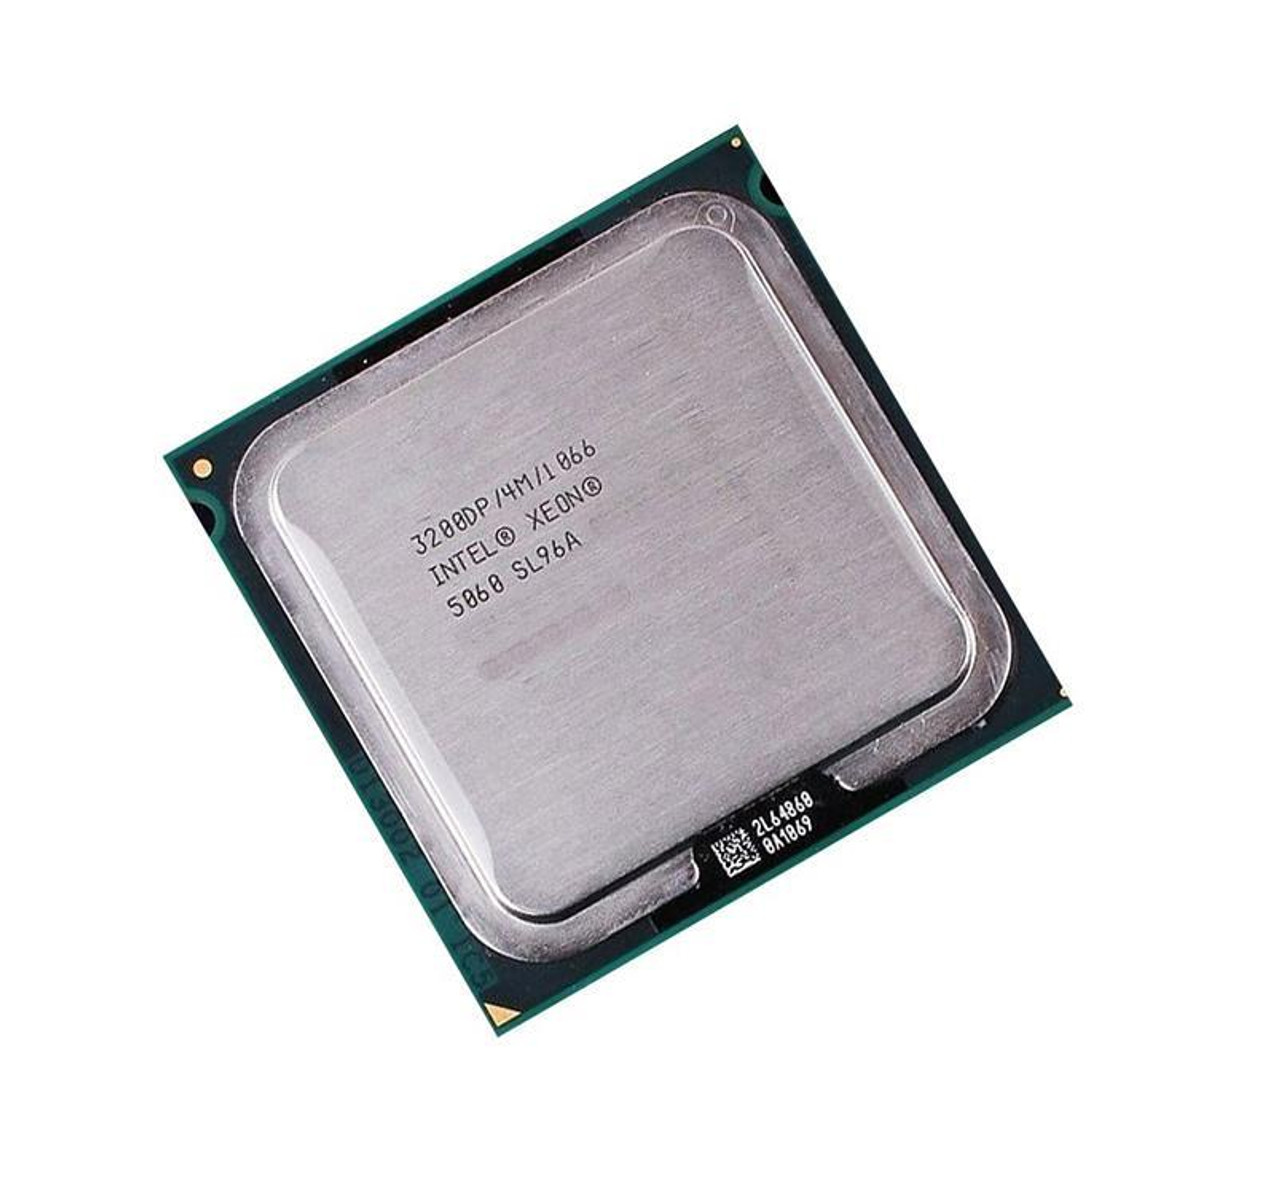 HH80555KH0884M Intel Xeon 5060 Dual Core 3.20GHz 1066MHz FSB 4MB L2 Cache Socket PLGA771 Processor